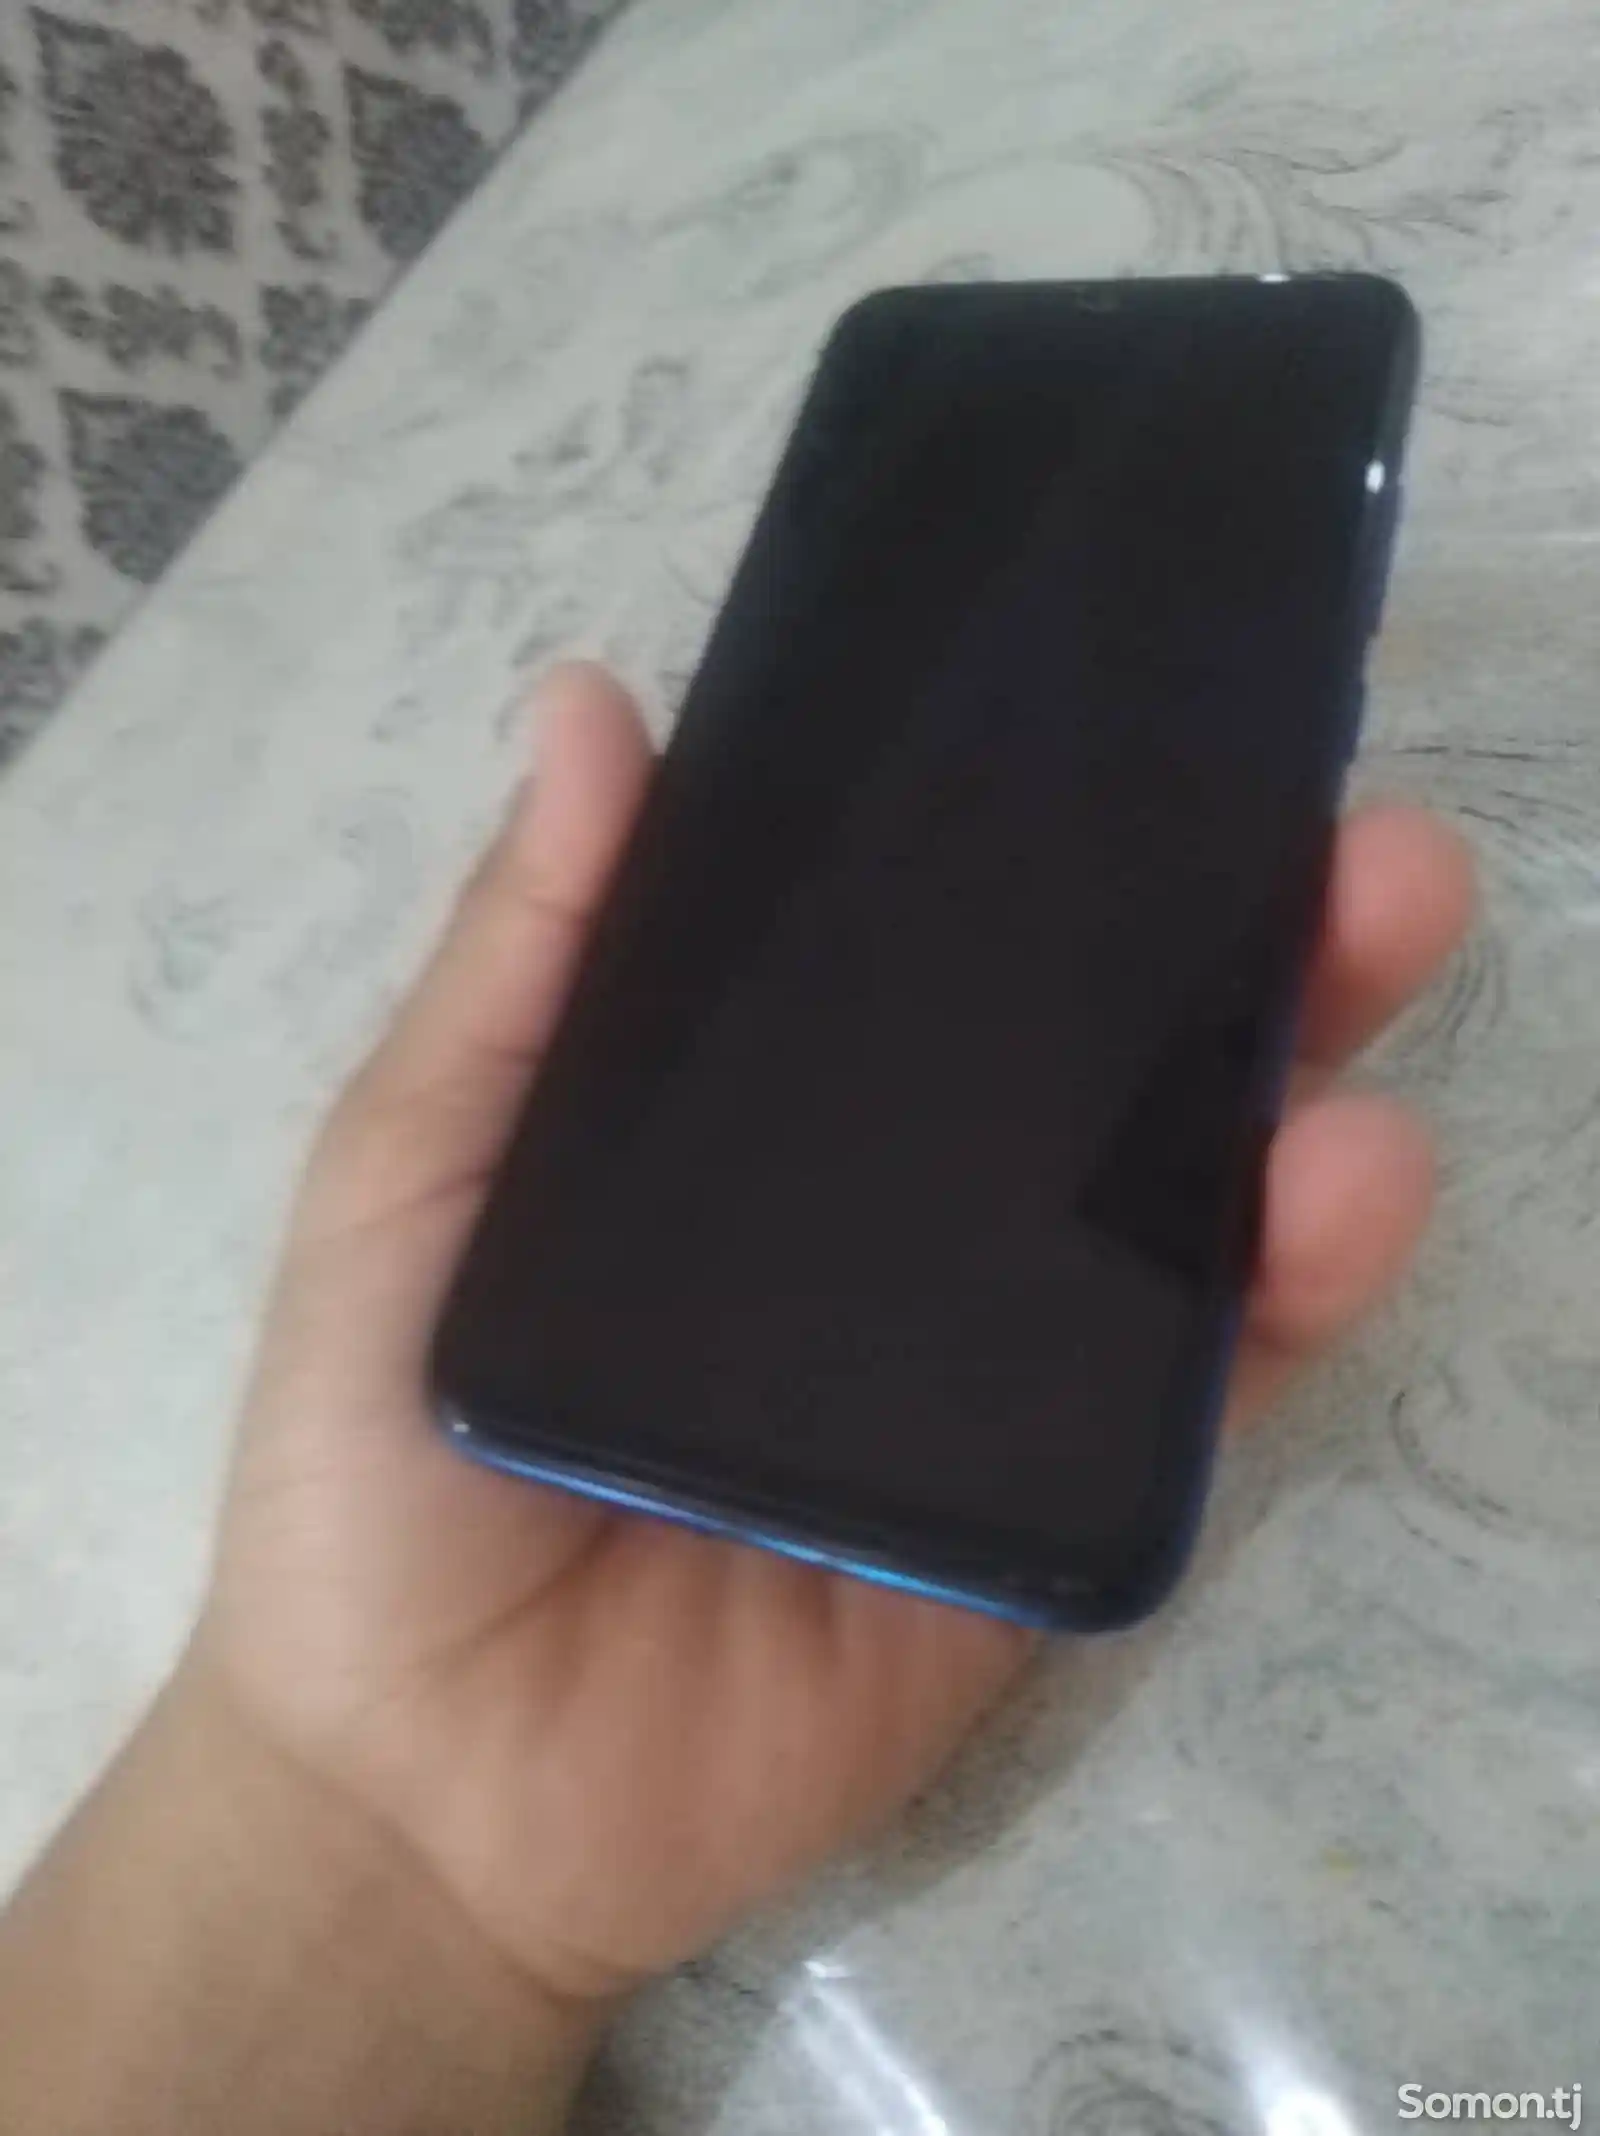 Xiaomi Redmi Note 7 Pro-2